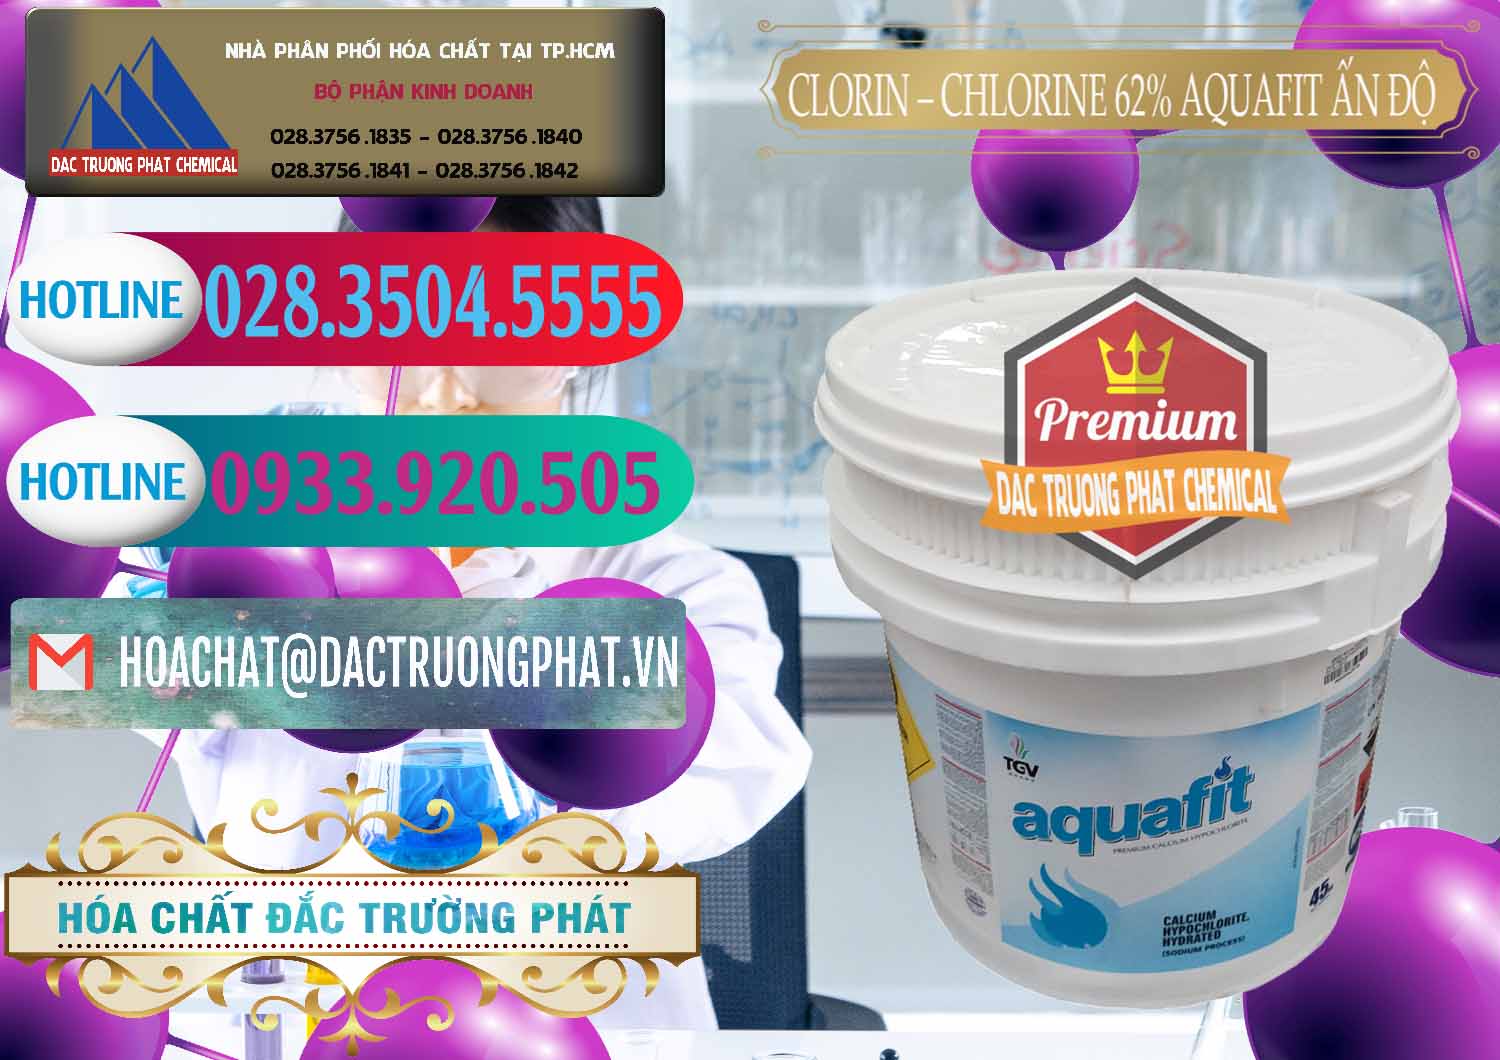 Nhà cung ứng & bán Clorin - Chlorine 62% Aquafit Thùng Lùn Ấn Độ India - 0057 - Cty chuyên cung cấp - bán hóa chất tại TP.HCM - truongphat.vn